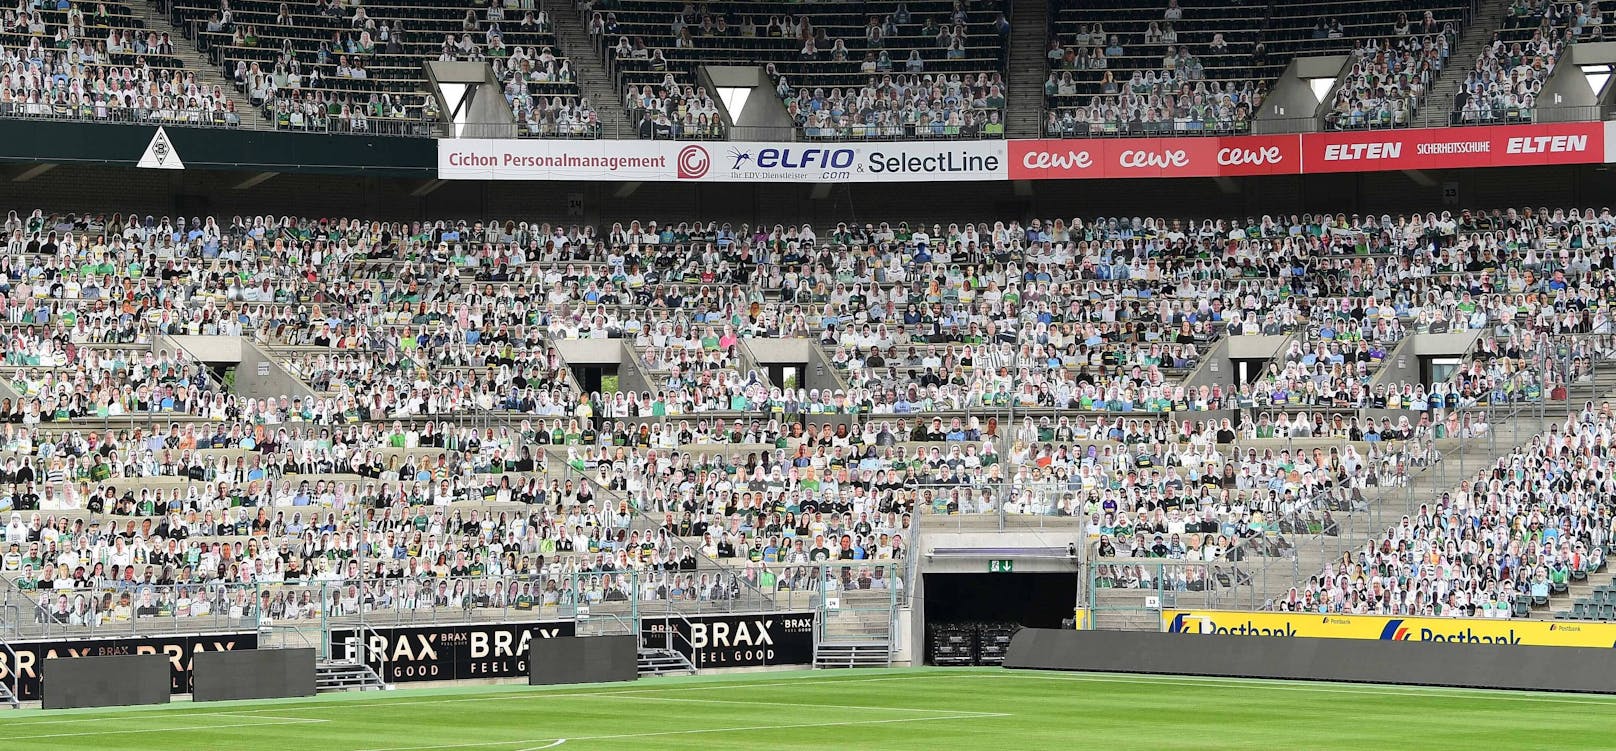 Gladbach schmückt das Stadion mit 20.000 Fans aus Pappe